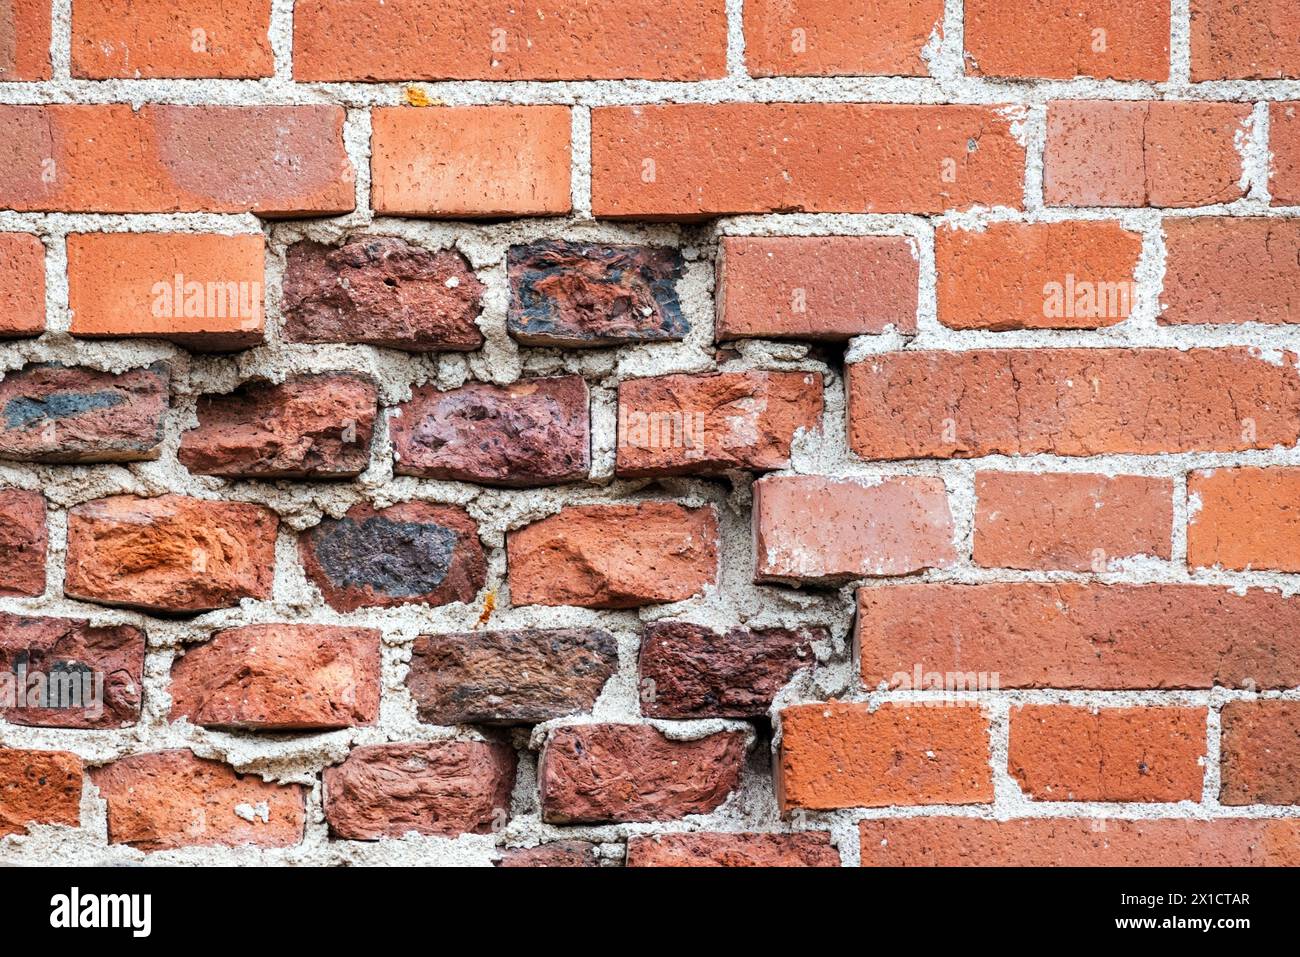 Mur de briques rouges endommagé avecold et nouvelles briques, texture de photo de fond Banque D'Images